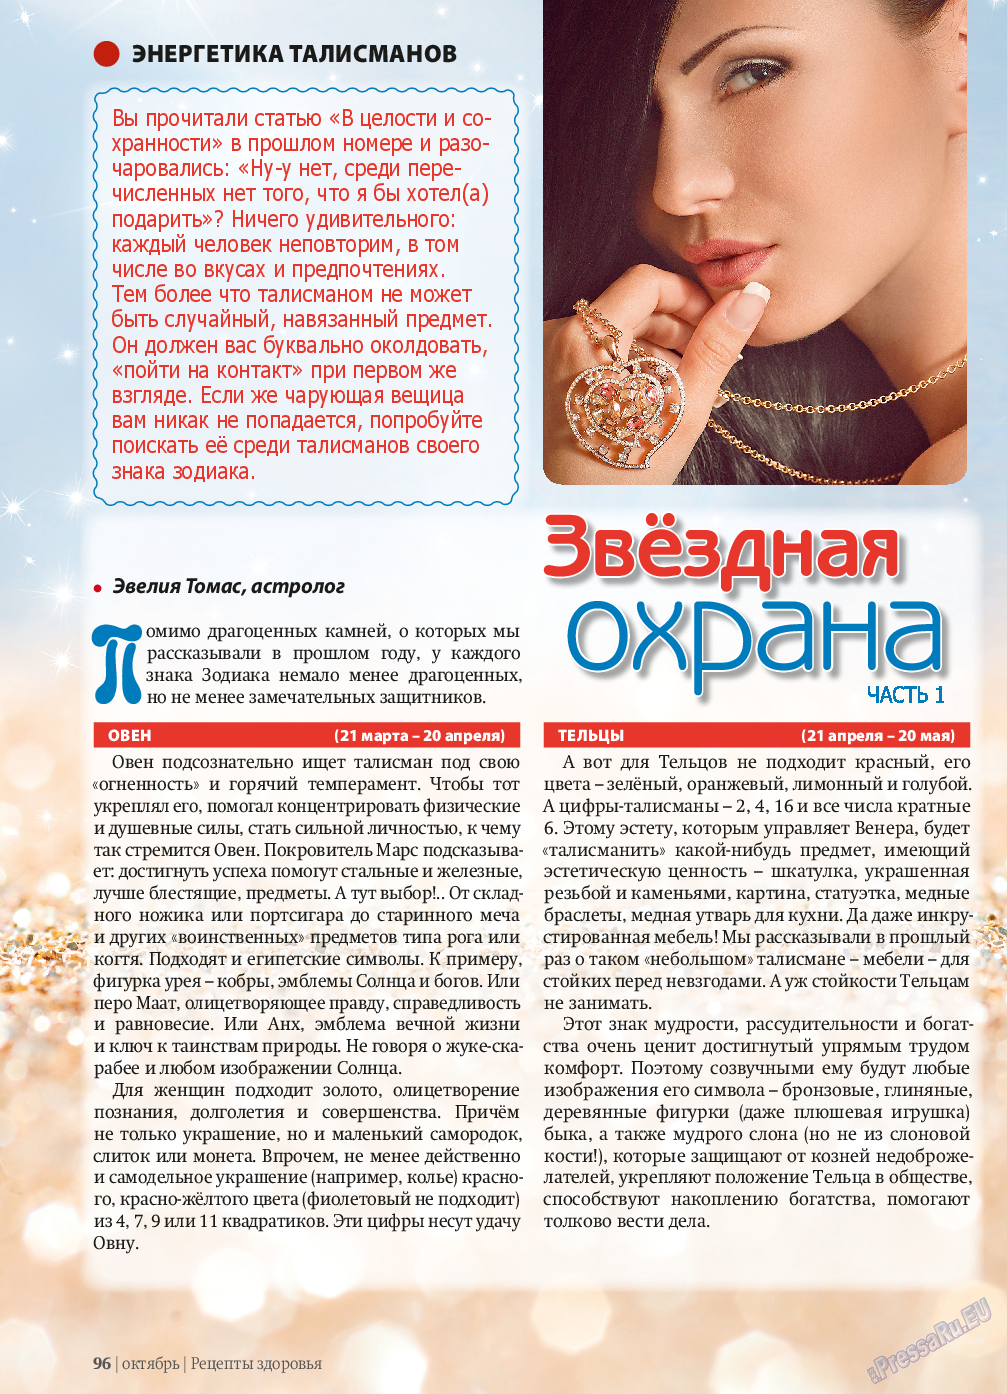 Рецепты здоровья, журнал. 2013 №10 стр.96